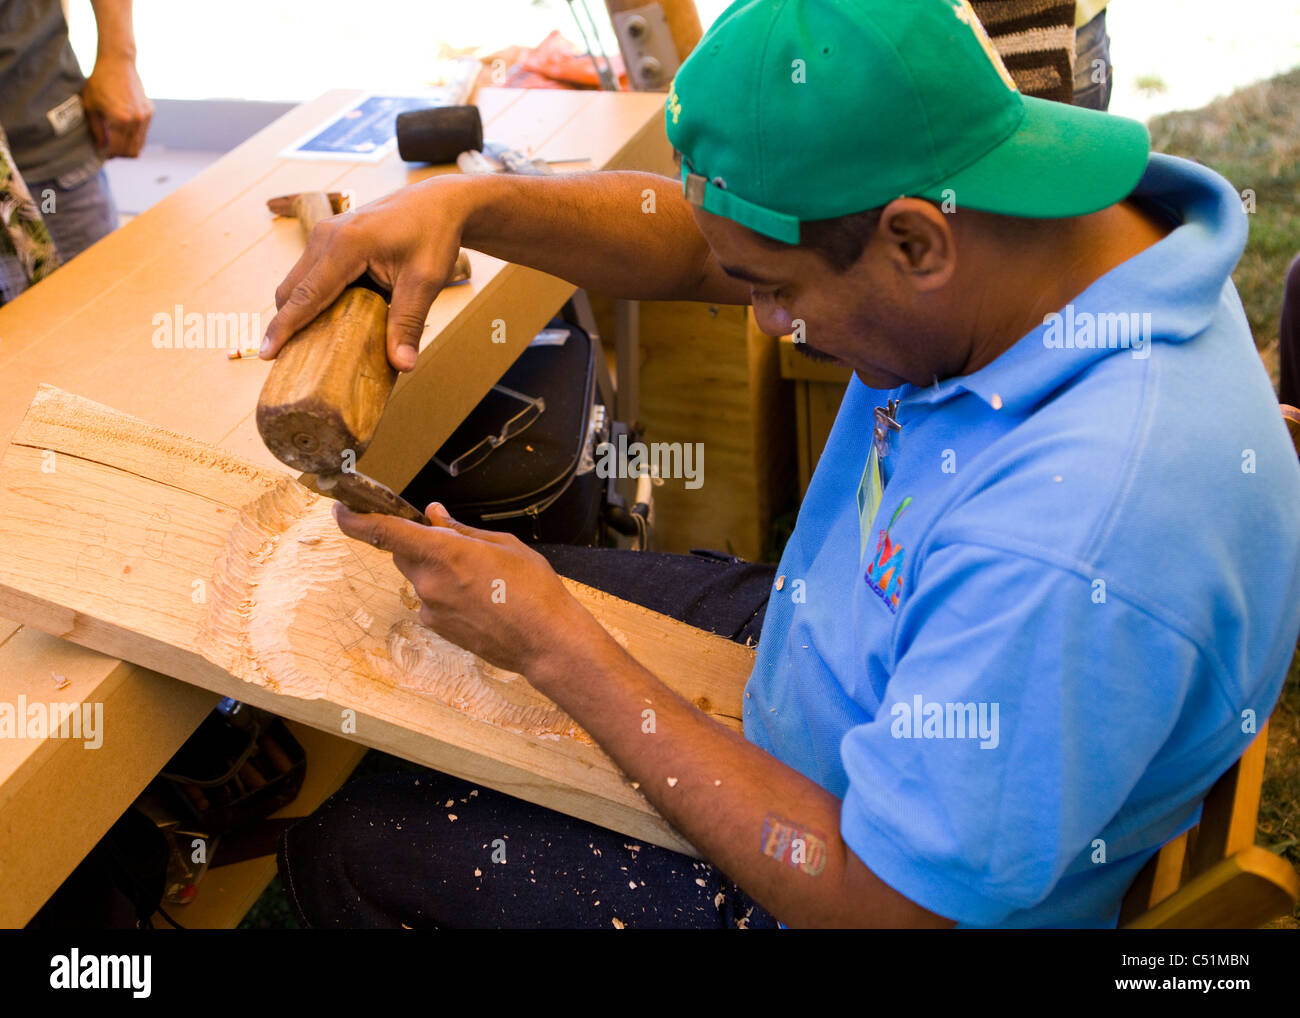 Sculpteur sur bois colombienne travaillant avec le ciseau et mallet Banque D'Images